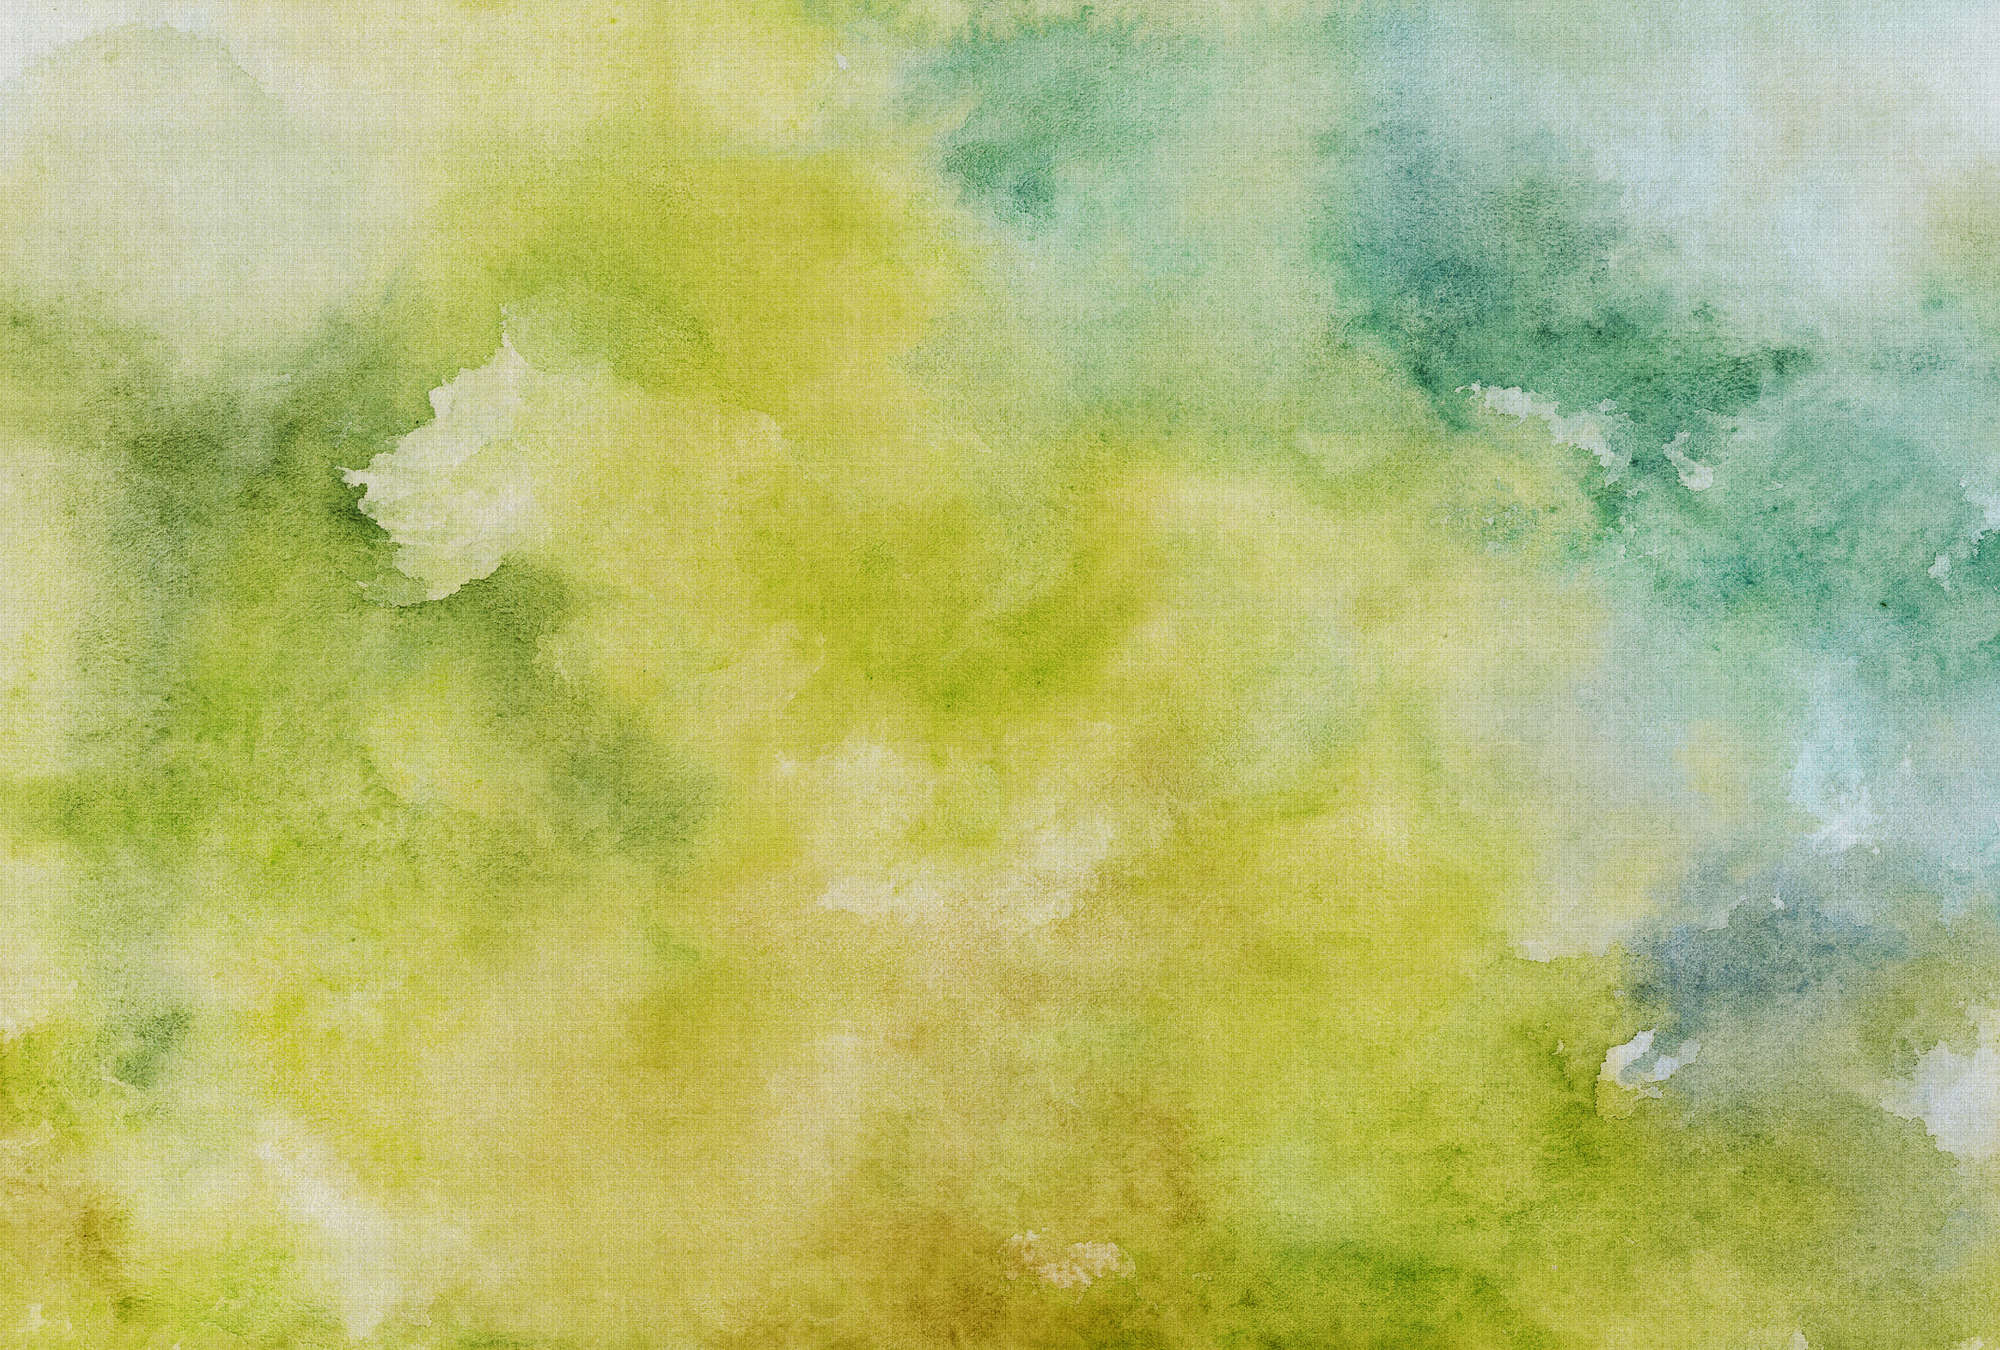             Acuarelas 3 - Motivo de acuarela verde como papel pintado fotográfico en estructura de lino natural - Amarillo, Verde | Perla liso no tejido
        